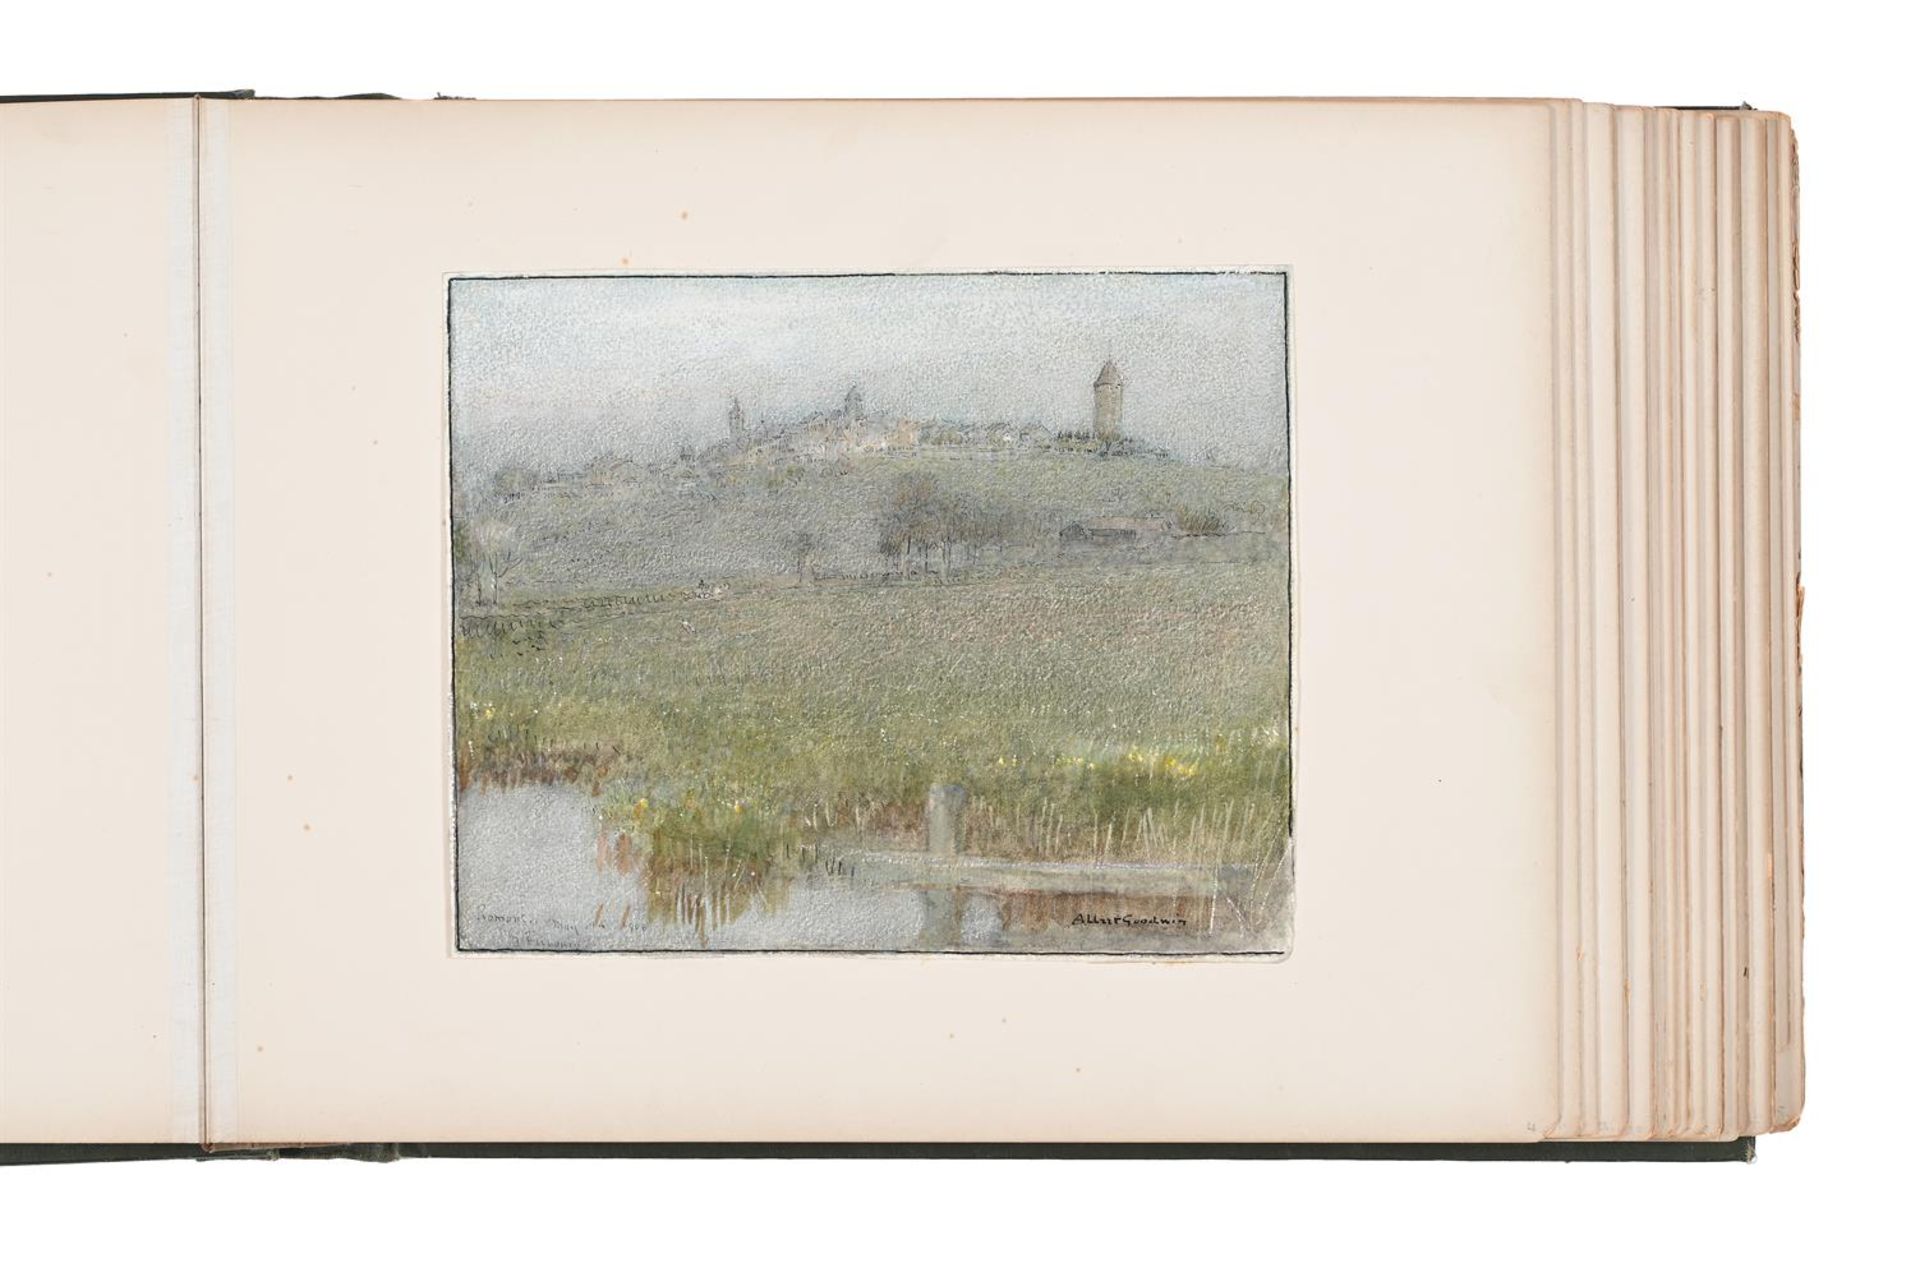 ALBERT GOODWIN (BRITISH 1845-1932), ROMONT, NEAR FRIBOURG, SWITZERLAND - Image 2 of 2